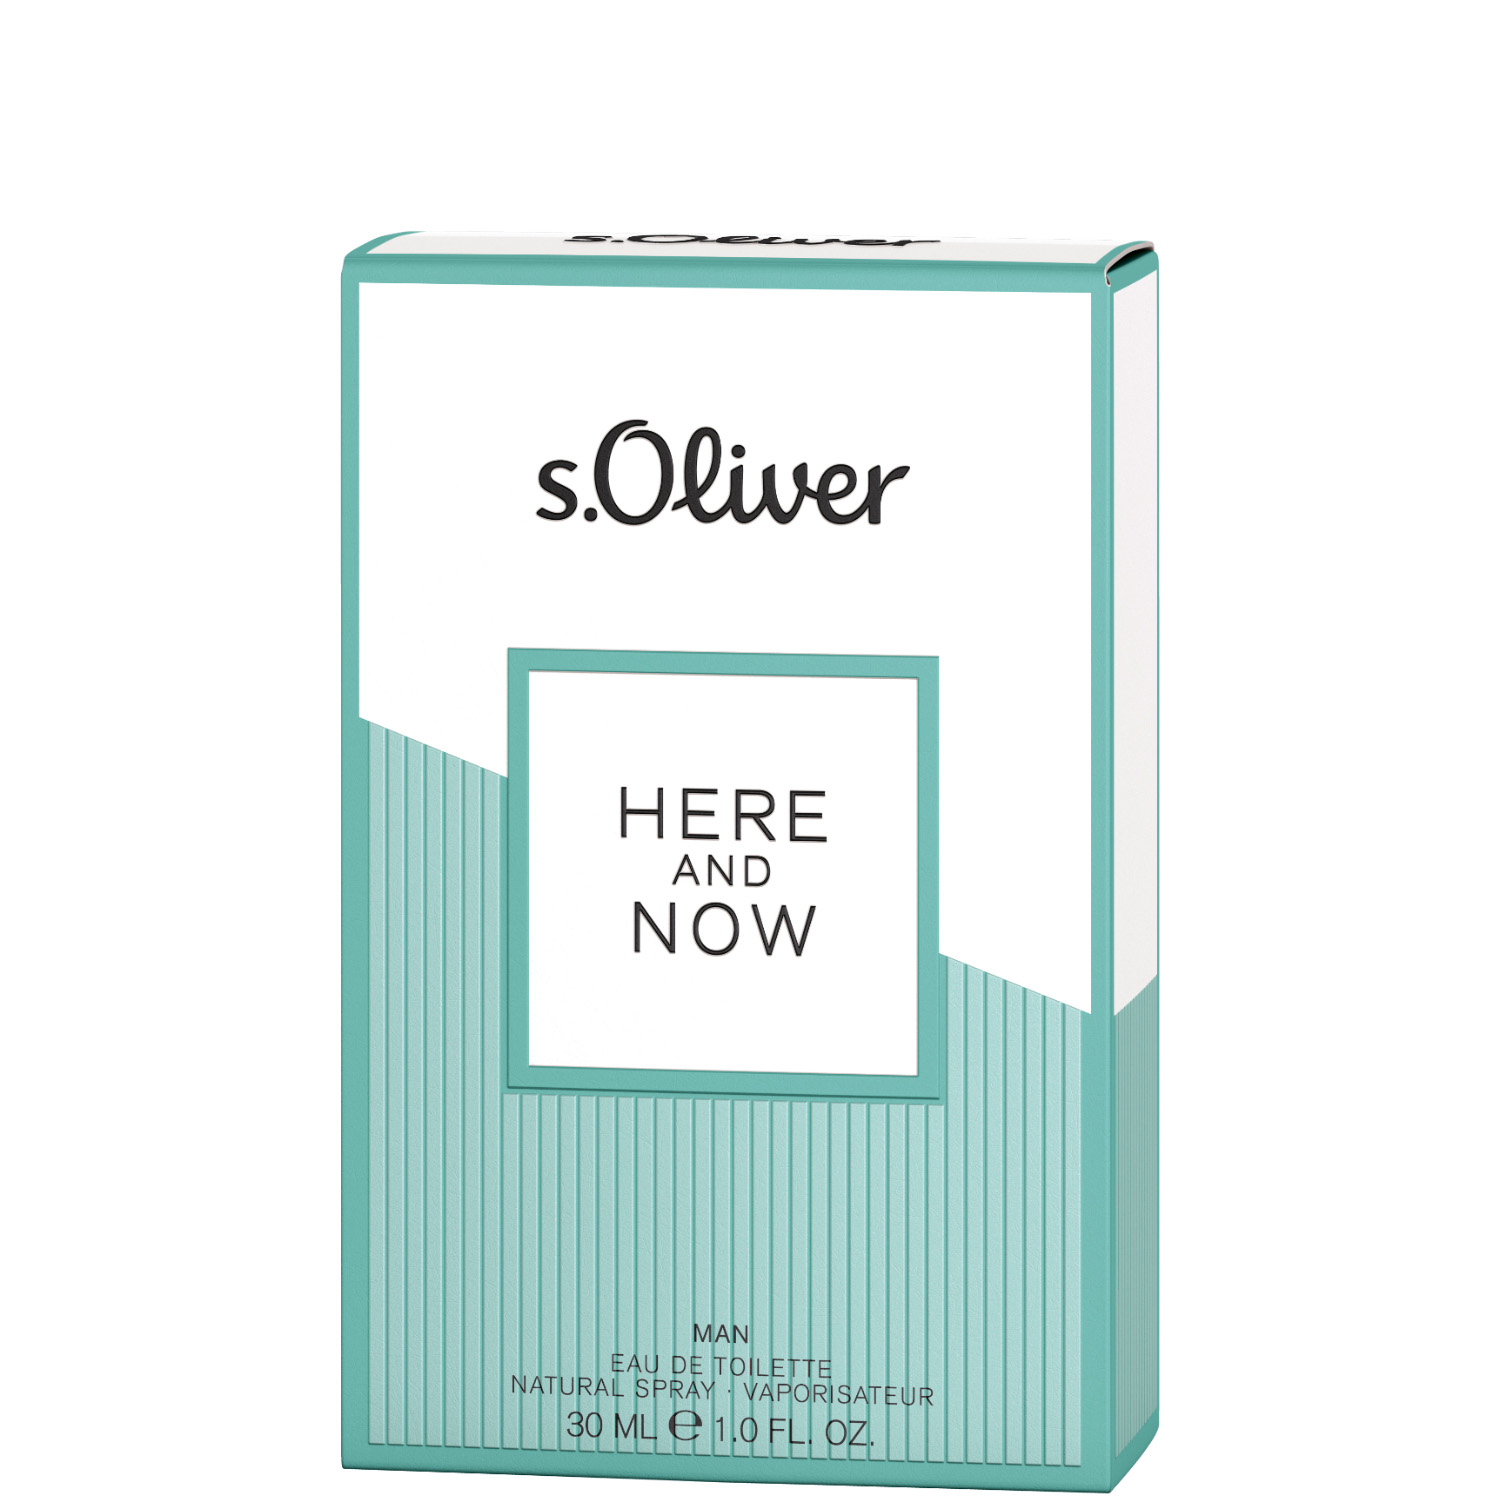 S.Oliver Here And Now Men Eau de Toilette 30ml